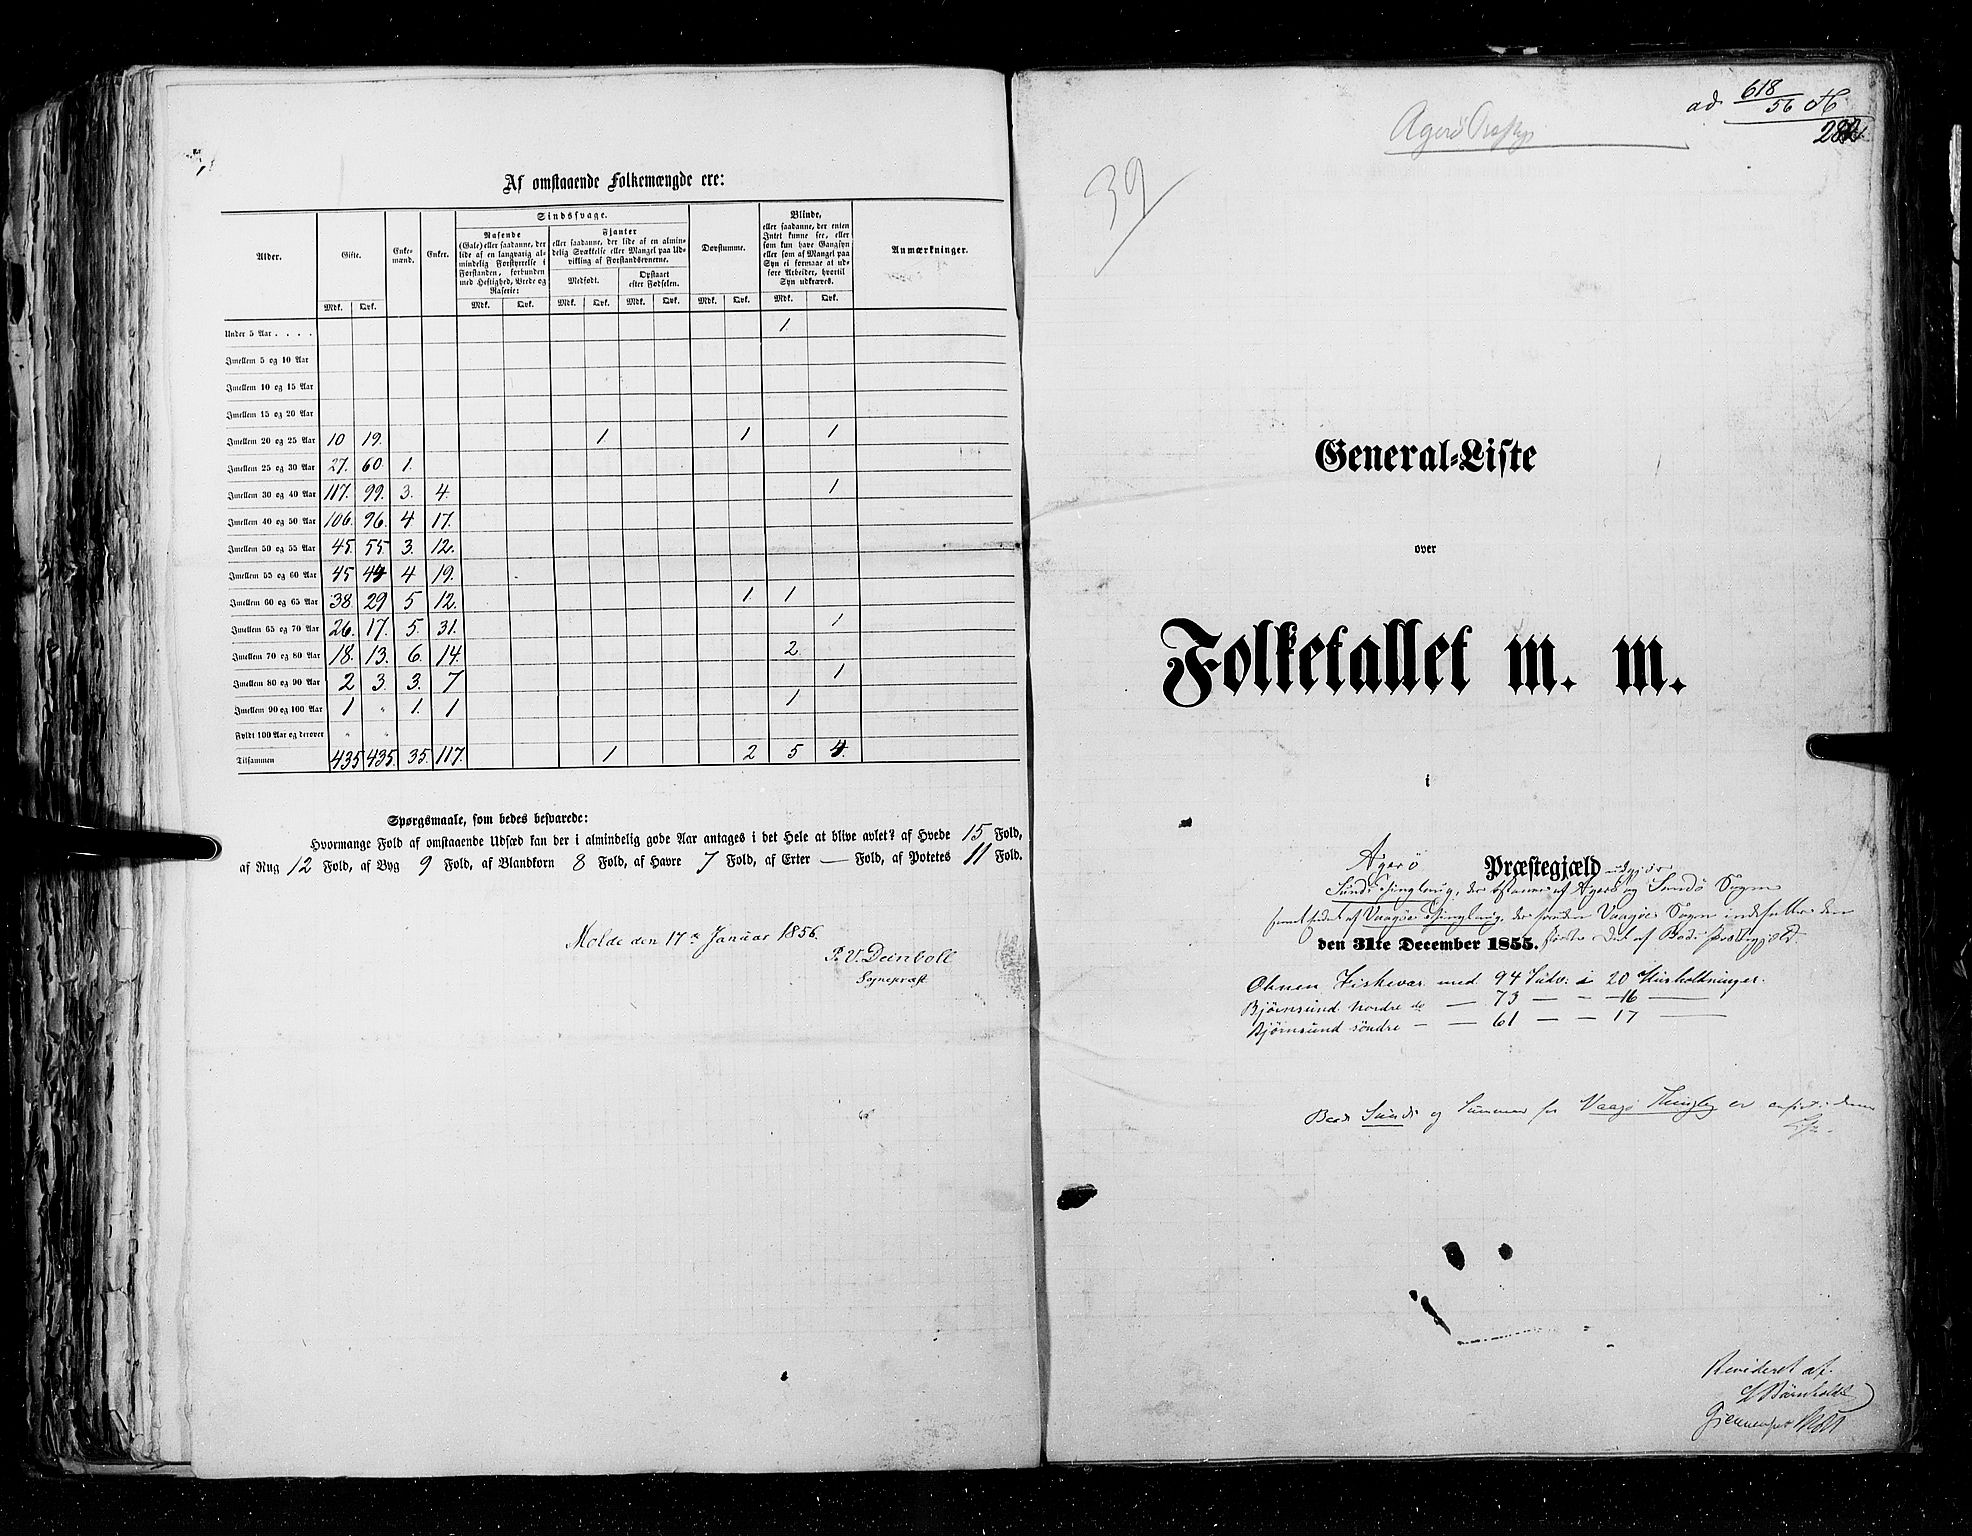 RA, Census 1855, vol. 5: Nordre Bergenhus amt, Romsdal amt og Søndre Trondhjem amt, 1855, p. 282